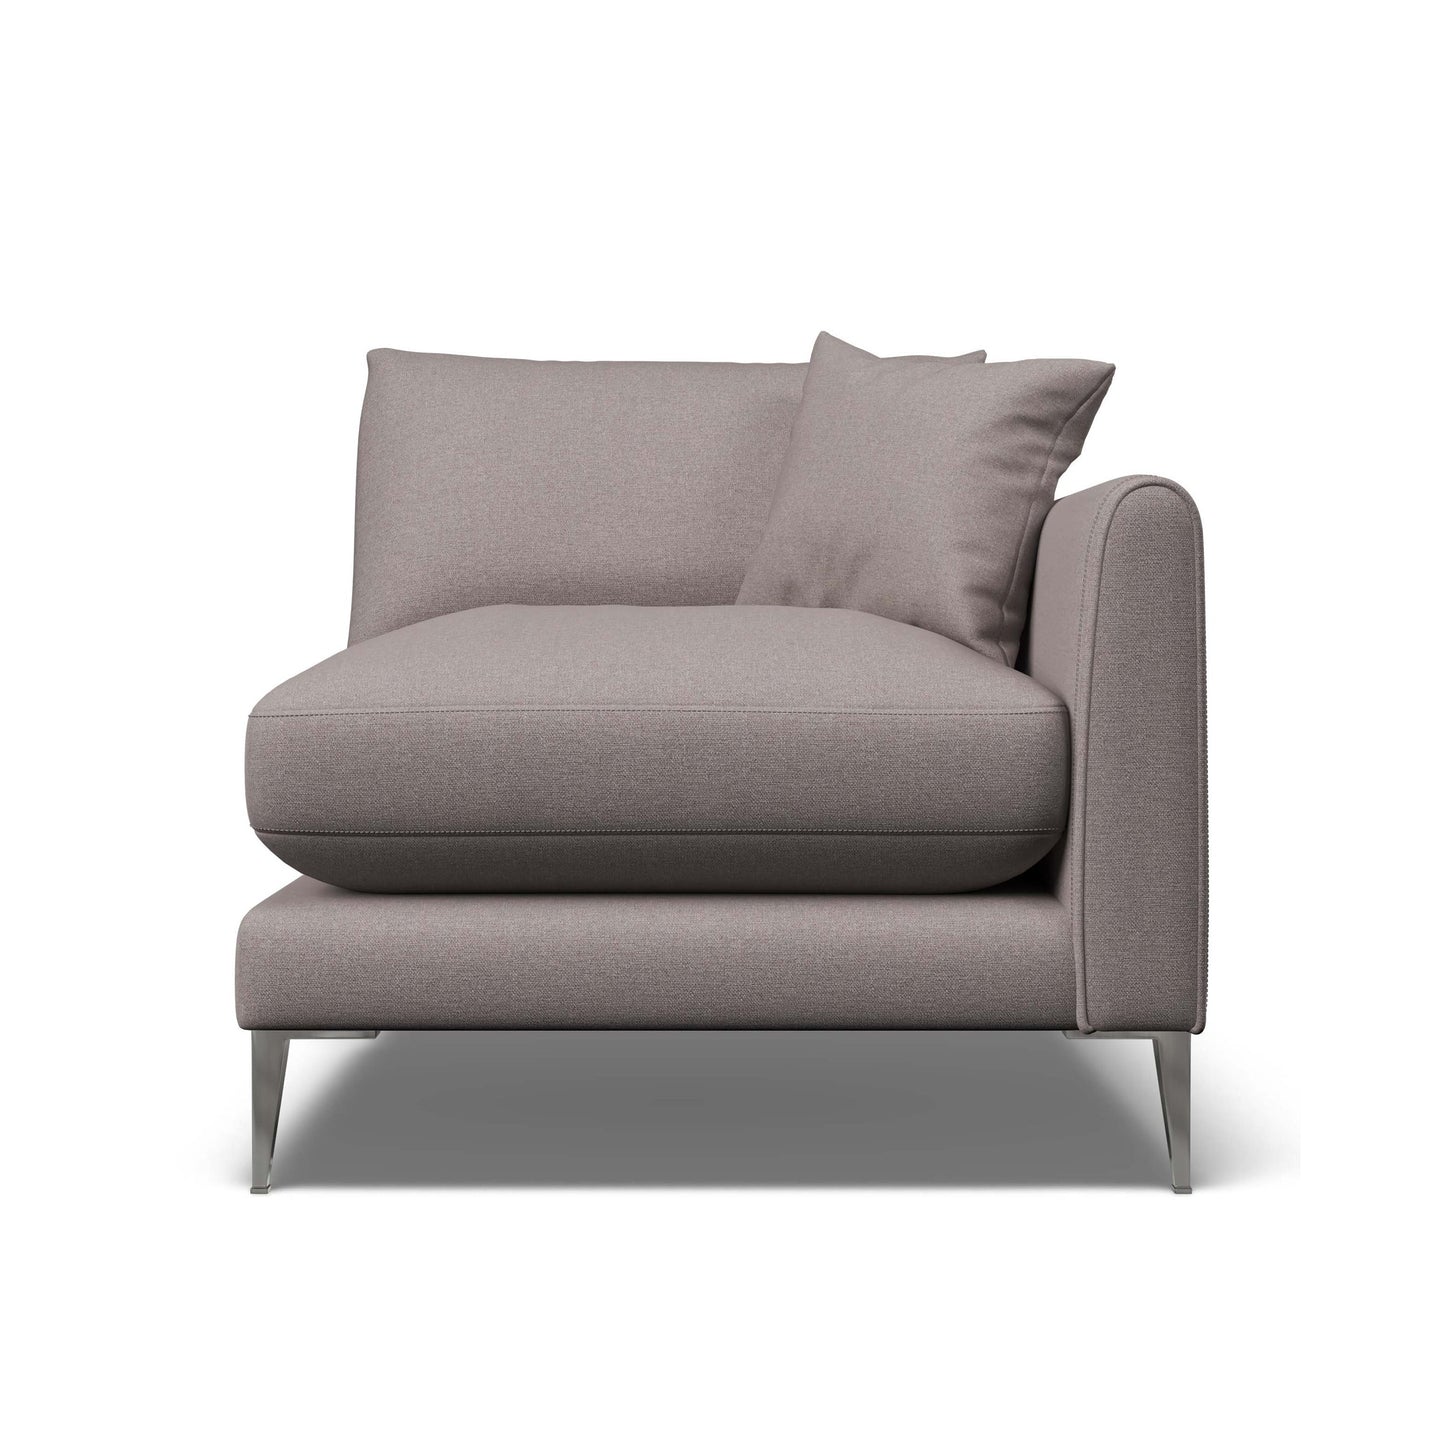 Kit Sofa - Design Your Own Sofa